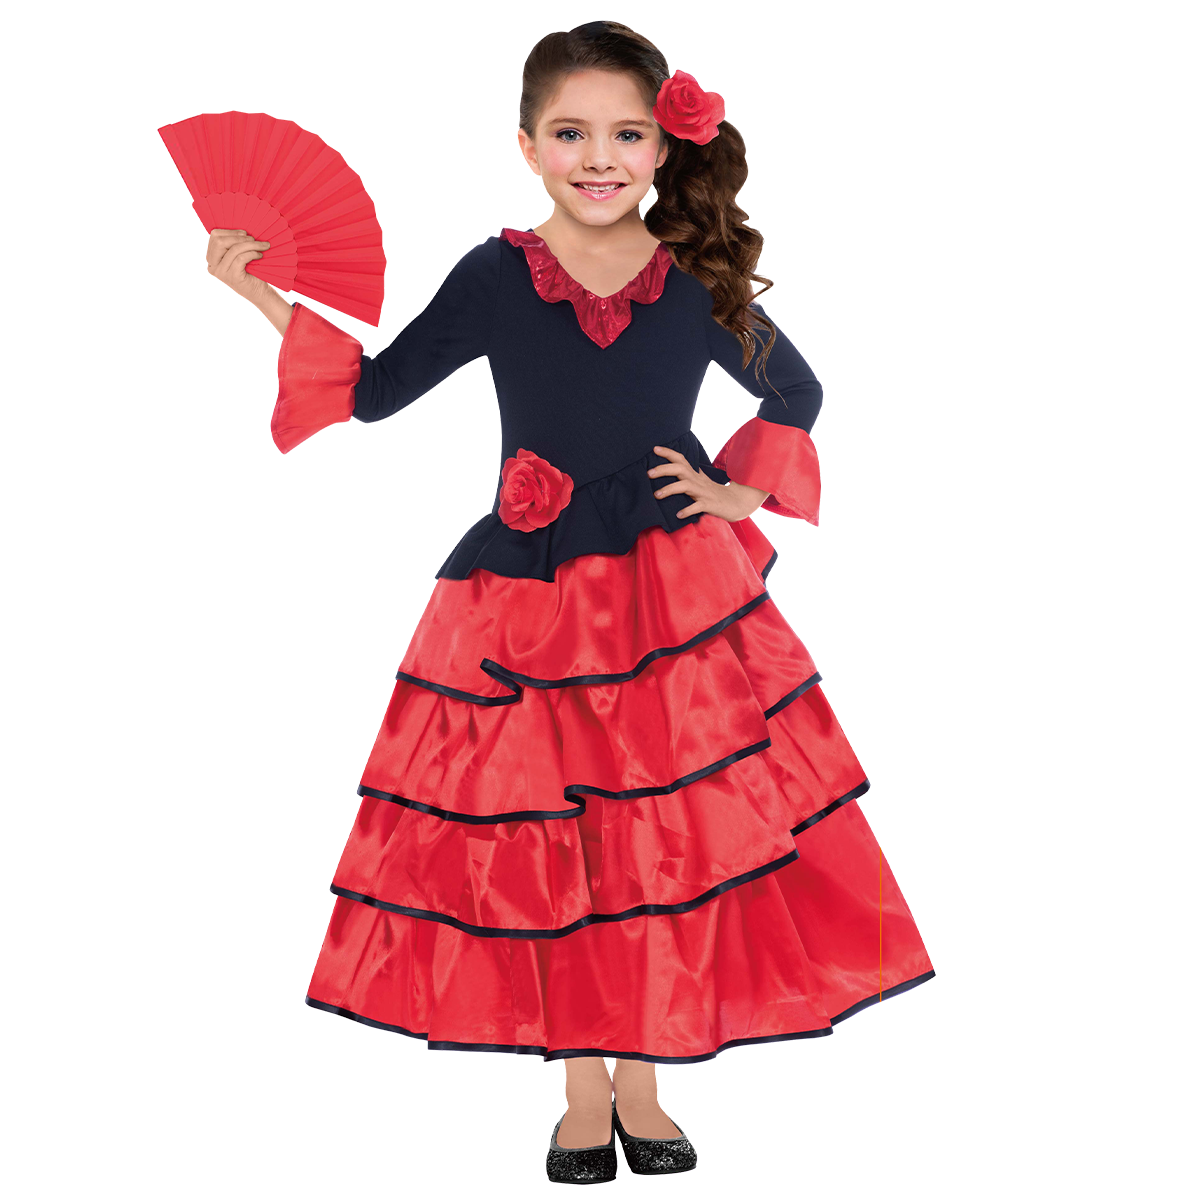 Child Spanish Girl Costume